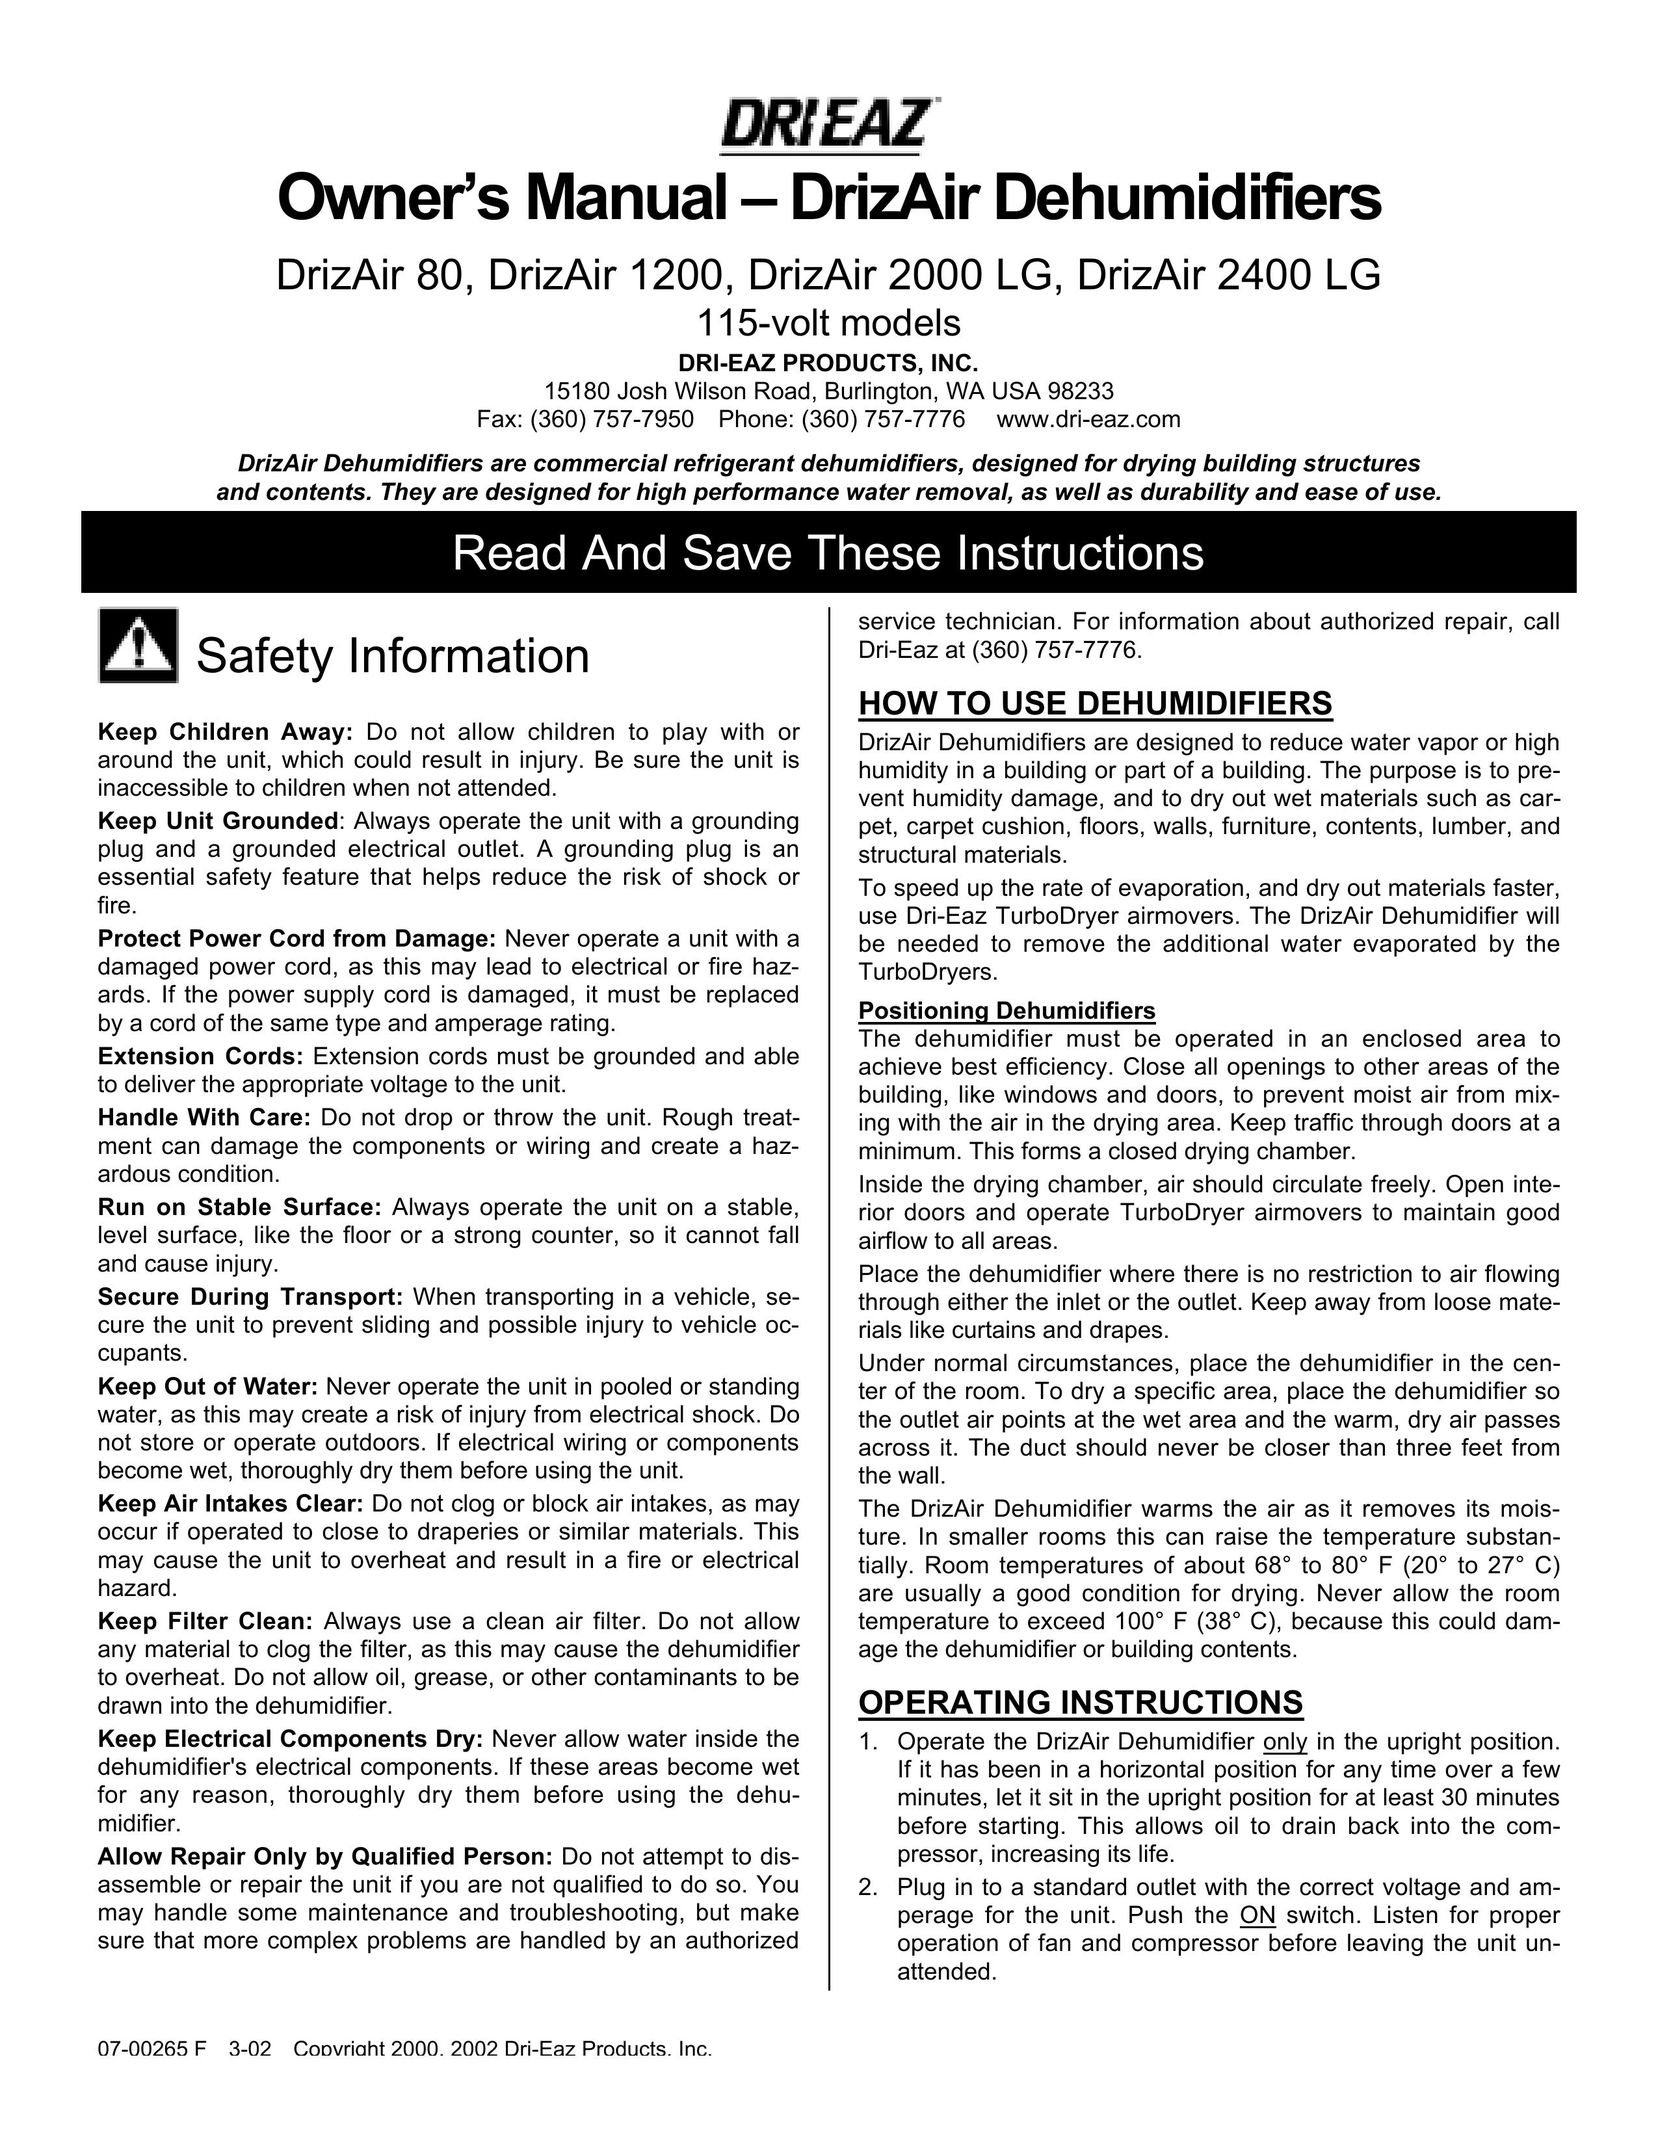 Dri-Eaz 2000 LG Dehumidifier User Manual